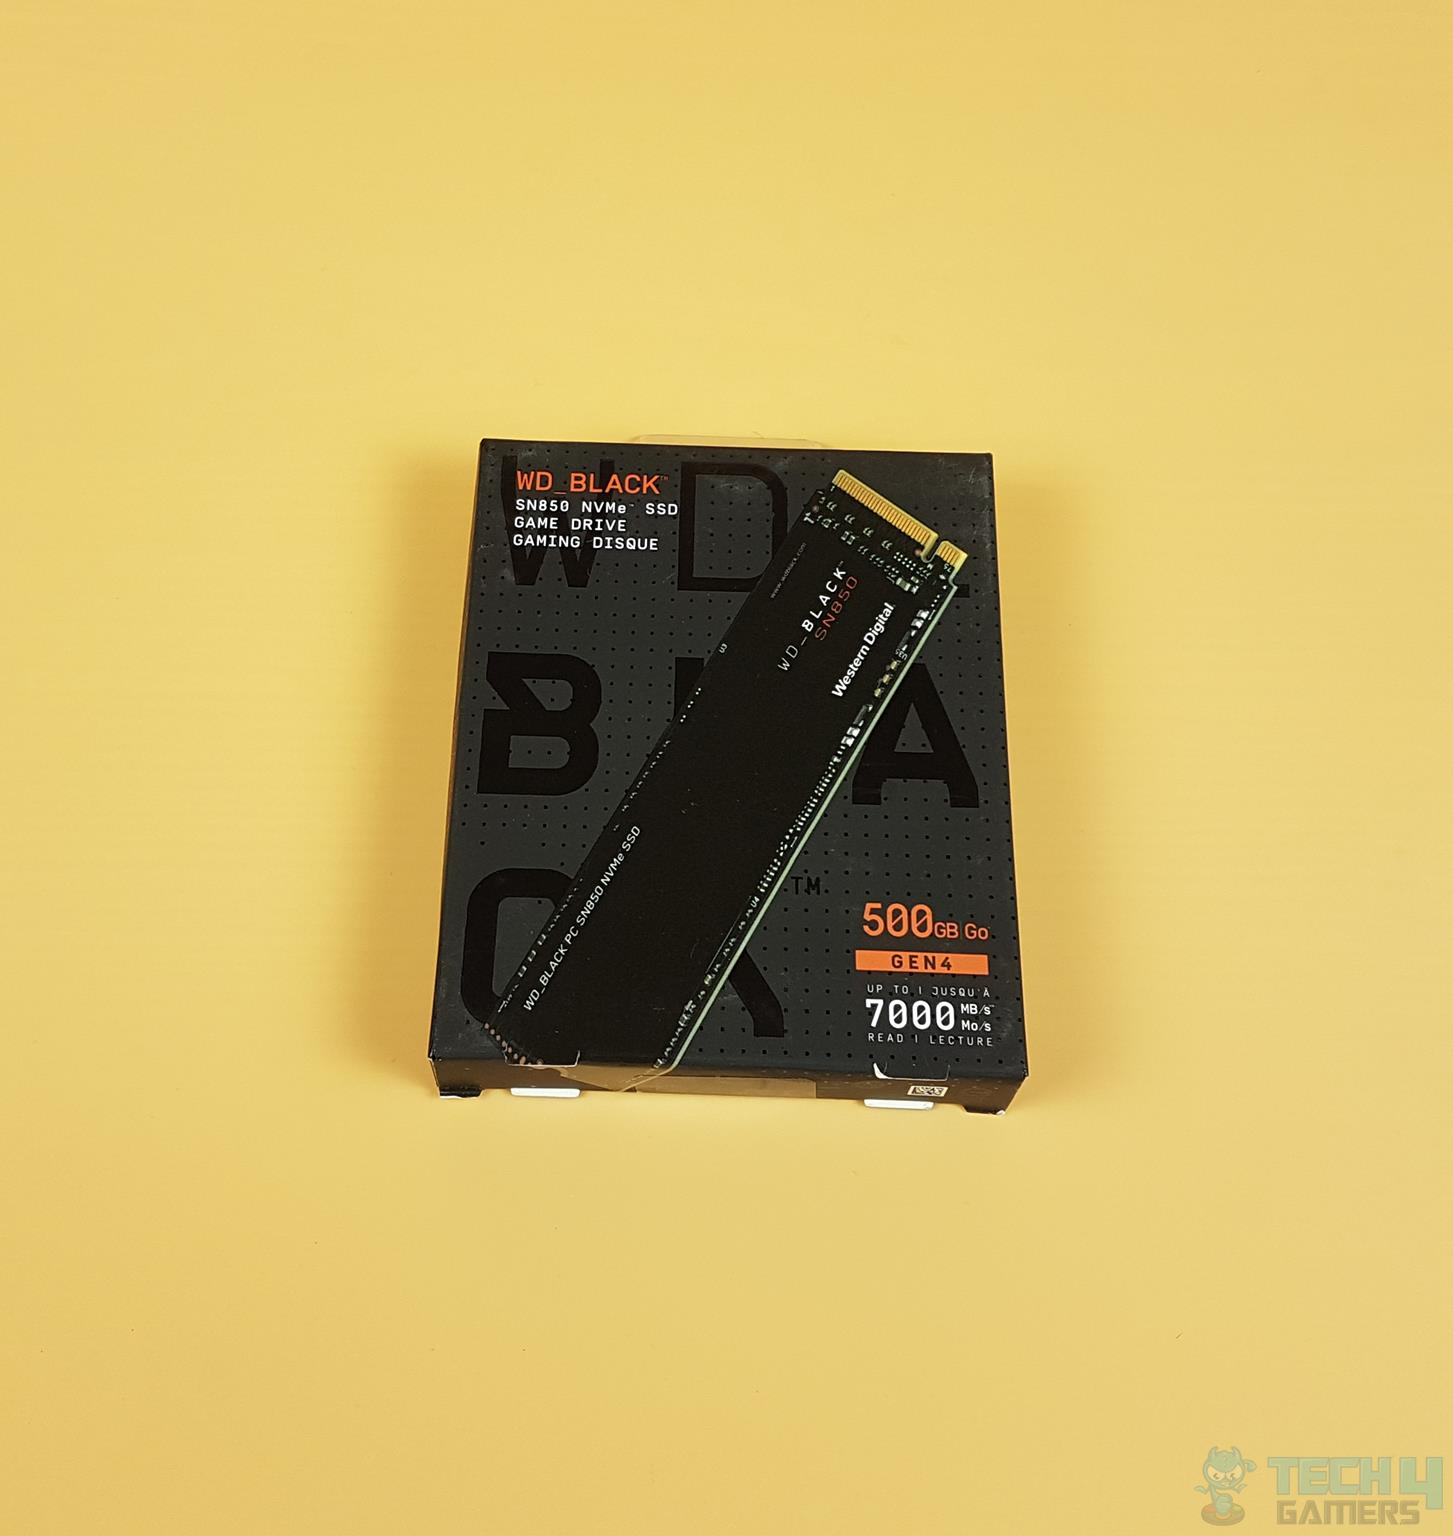 WD Black SN850 500GB NVMe — Packaging